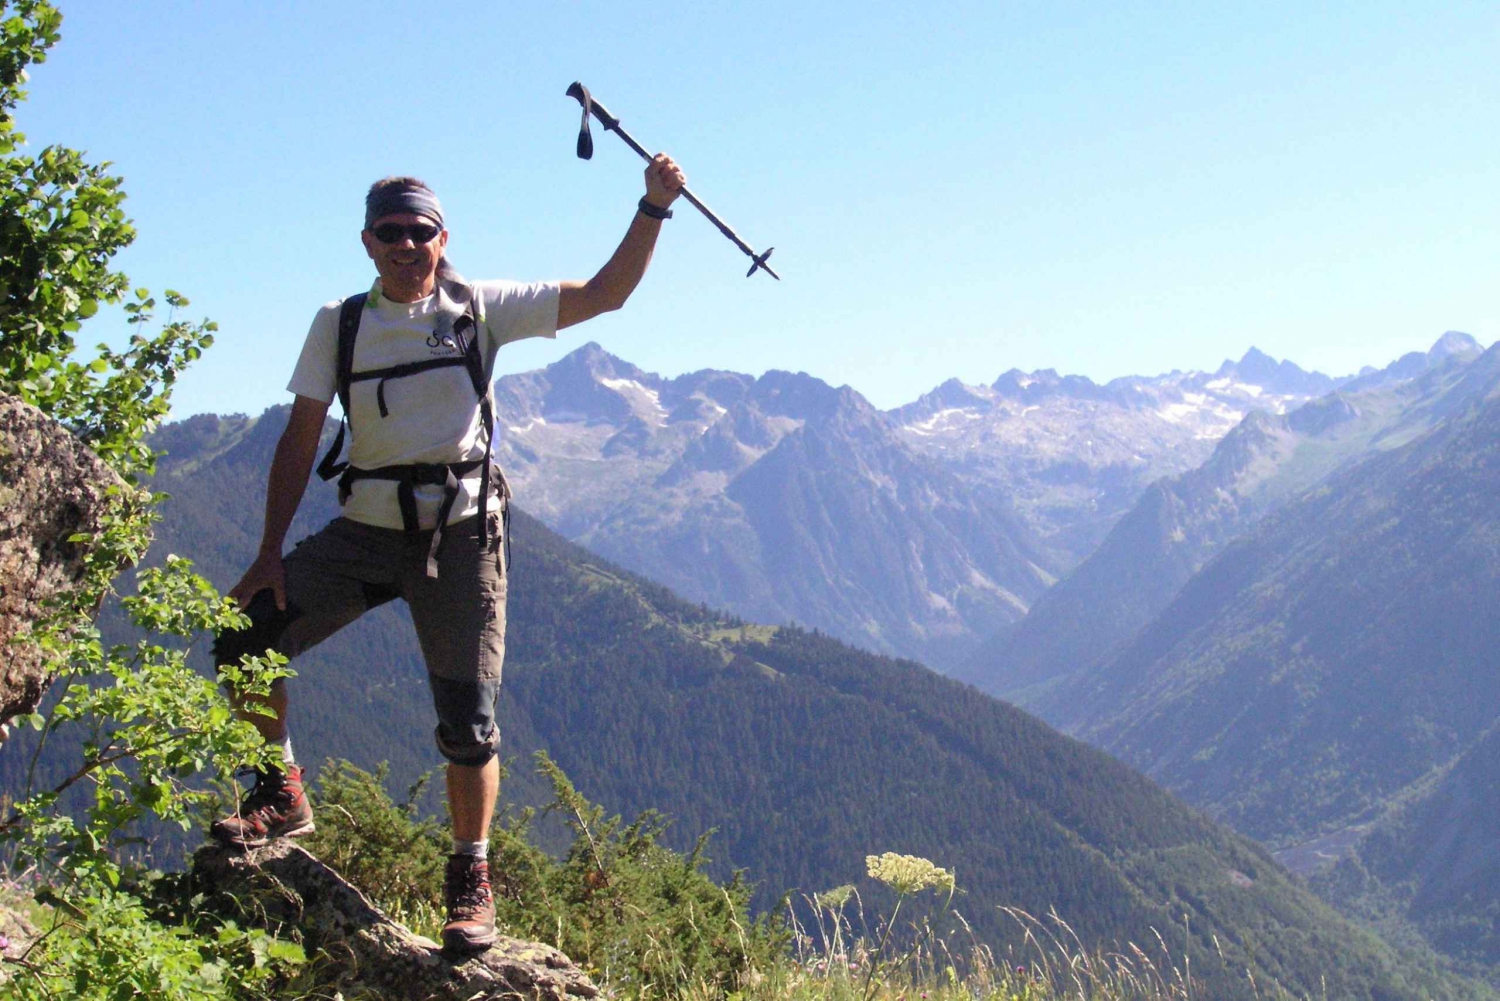 Pirineos: Excursión de un día con 3 niveles a elegir